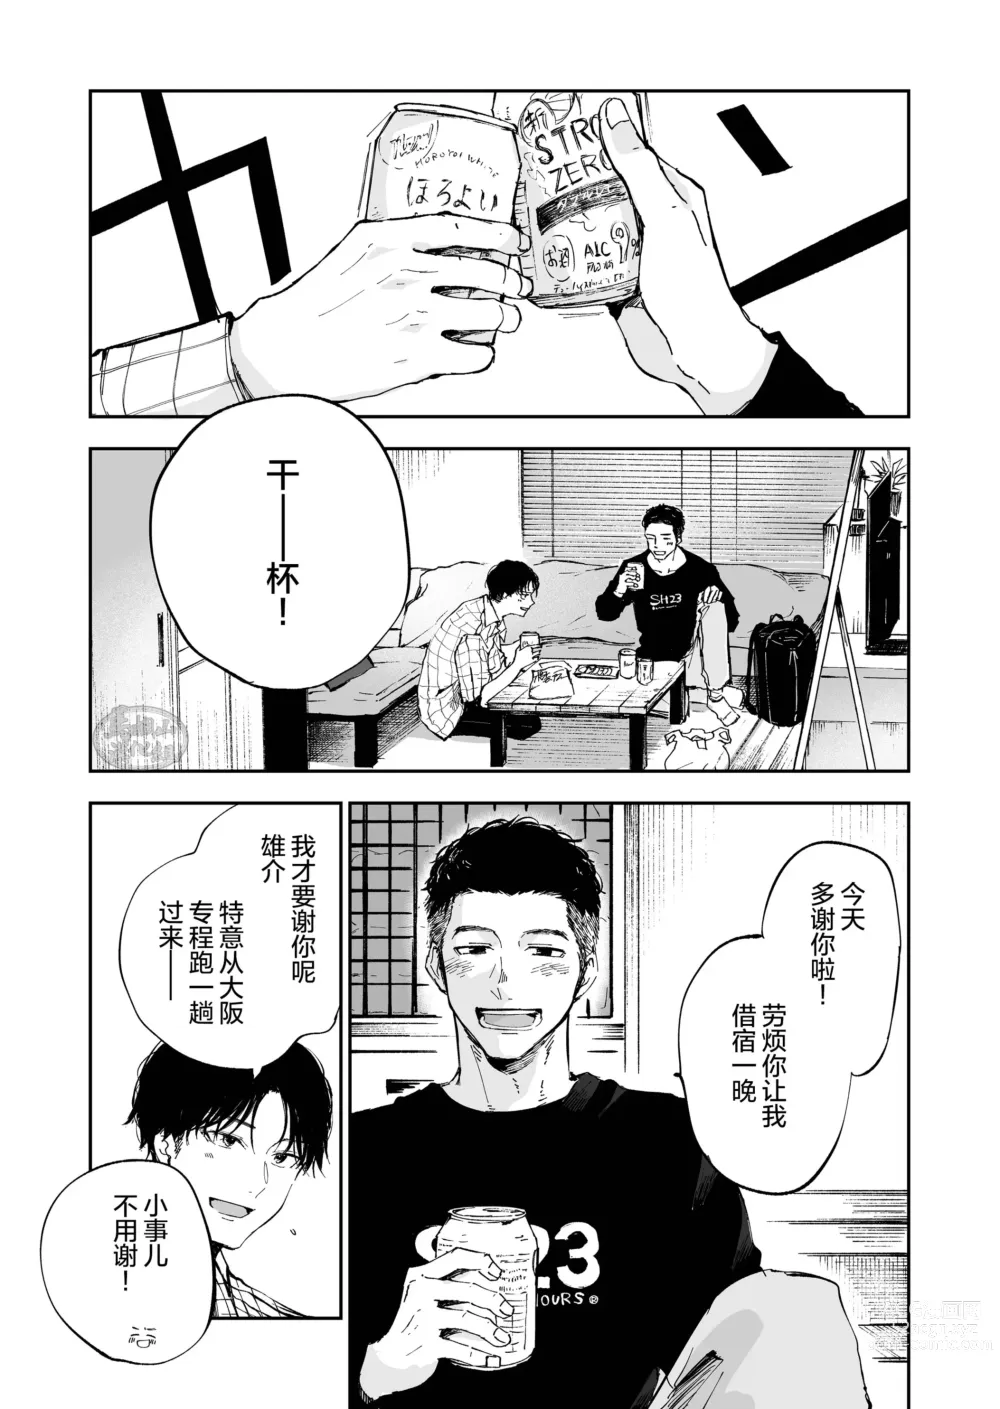 Page 3 of manga キミは ともだち